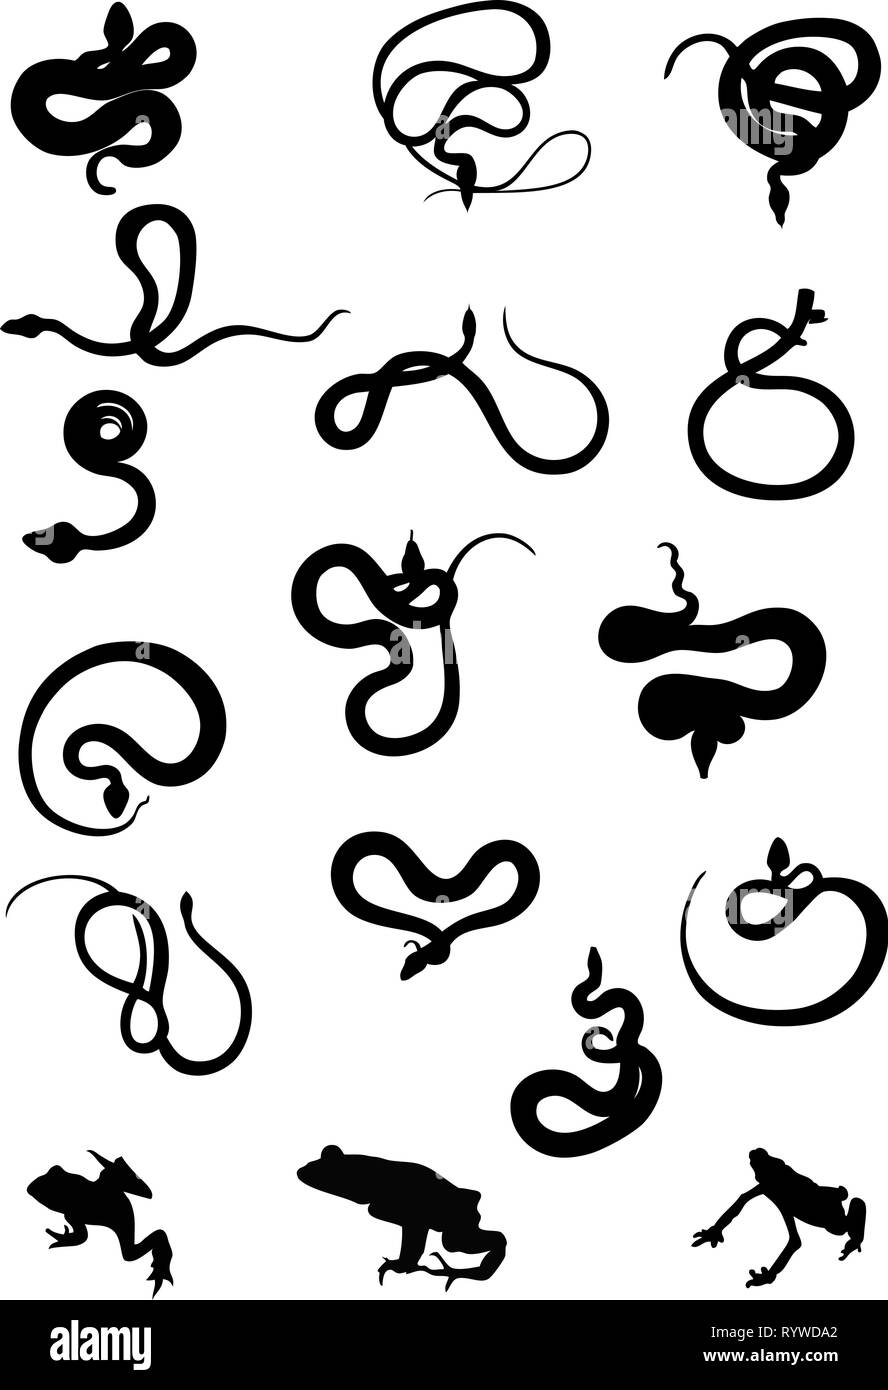 Die Abbildung zeigt eine Reihe von Silhouetten verschiedener Schlangen in der Farbe schwarz. Stock Vektor